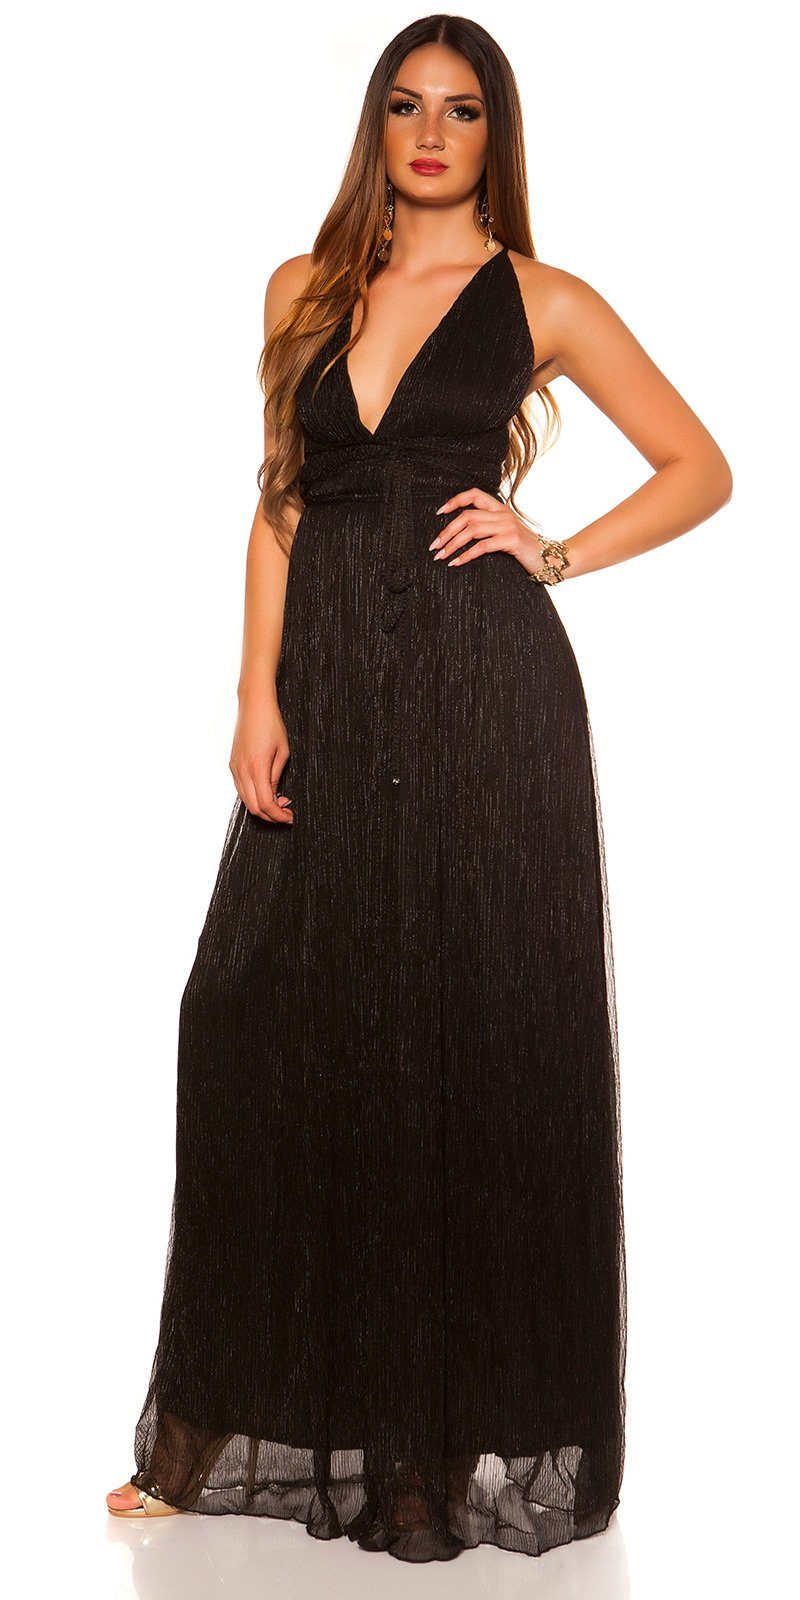 Koucla Abendkleid Maxikleid mit Rücken schwarz im offenem glänzendes, Plissee-Stil Material, Plissee glitzerndes